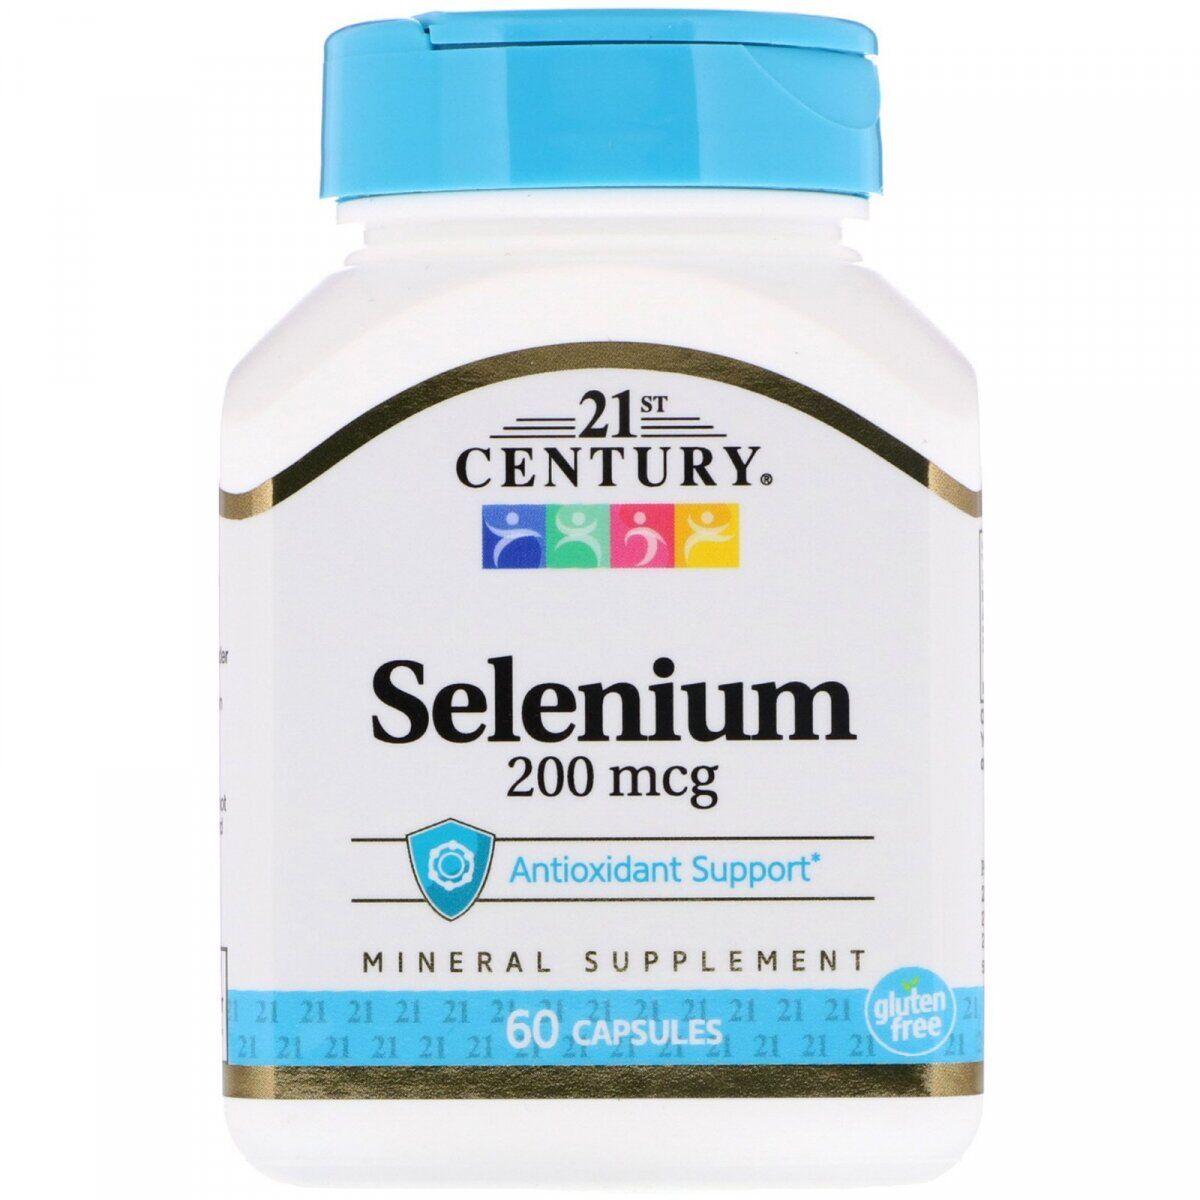 Харчова добавка 21st Century Selenium 200 mcg 60 Caps,  мл, 21st Century. Спец препараты. 